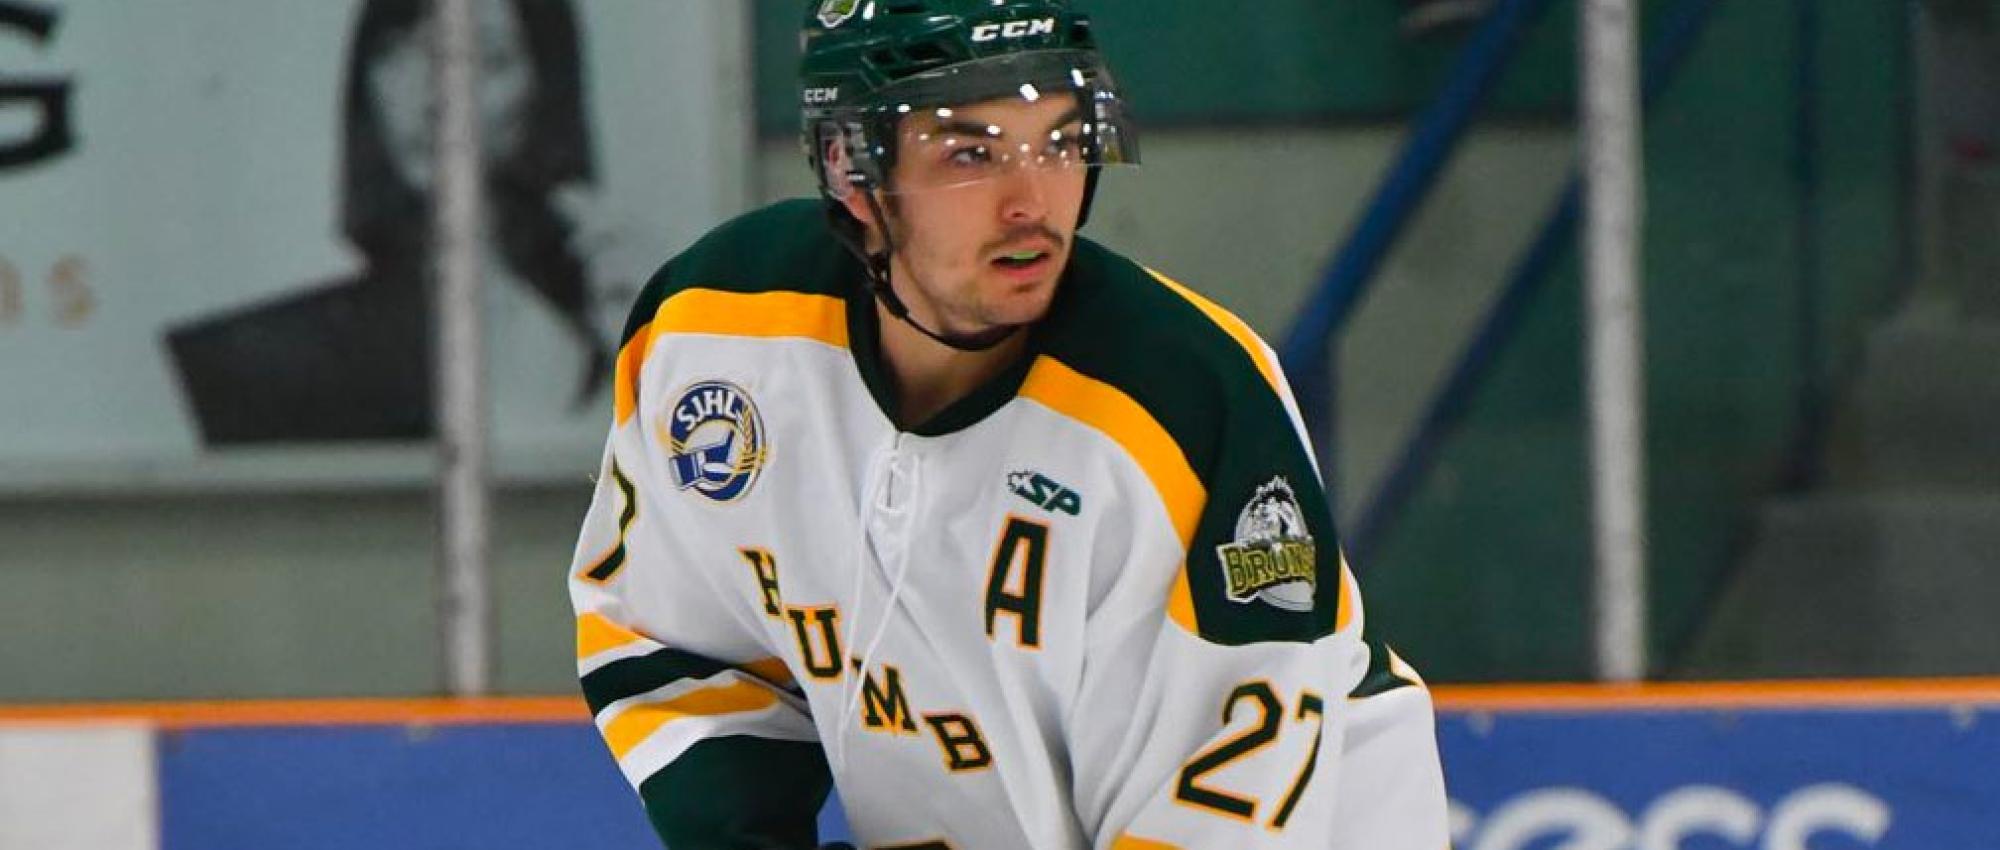 Logan Boulet sur la glace en uniforme de hockey